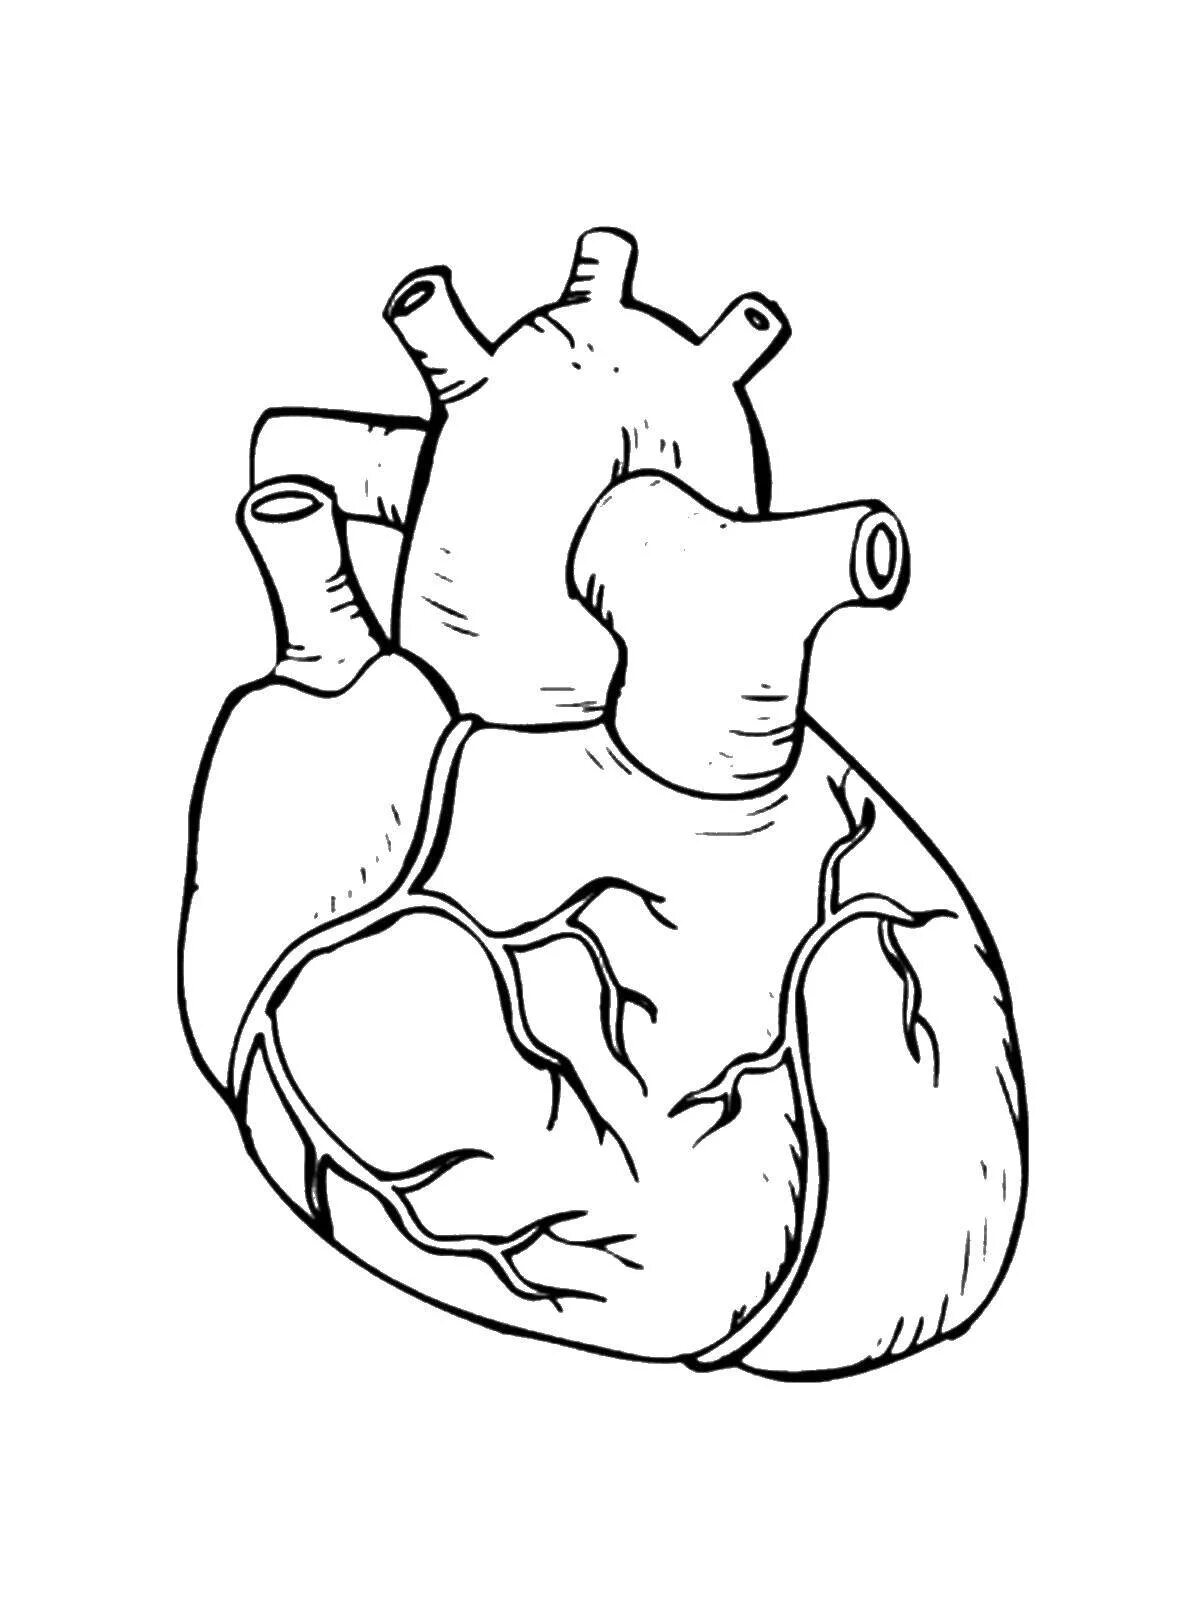 Мега-раскраска «Сердце» к 14 февраля. Распечатай, склей, раскрась